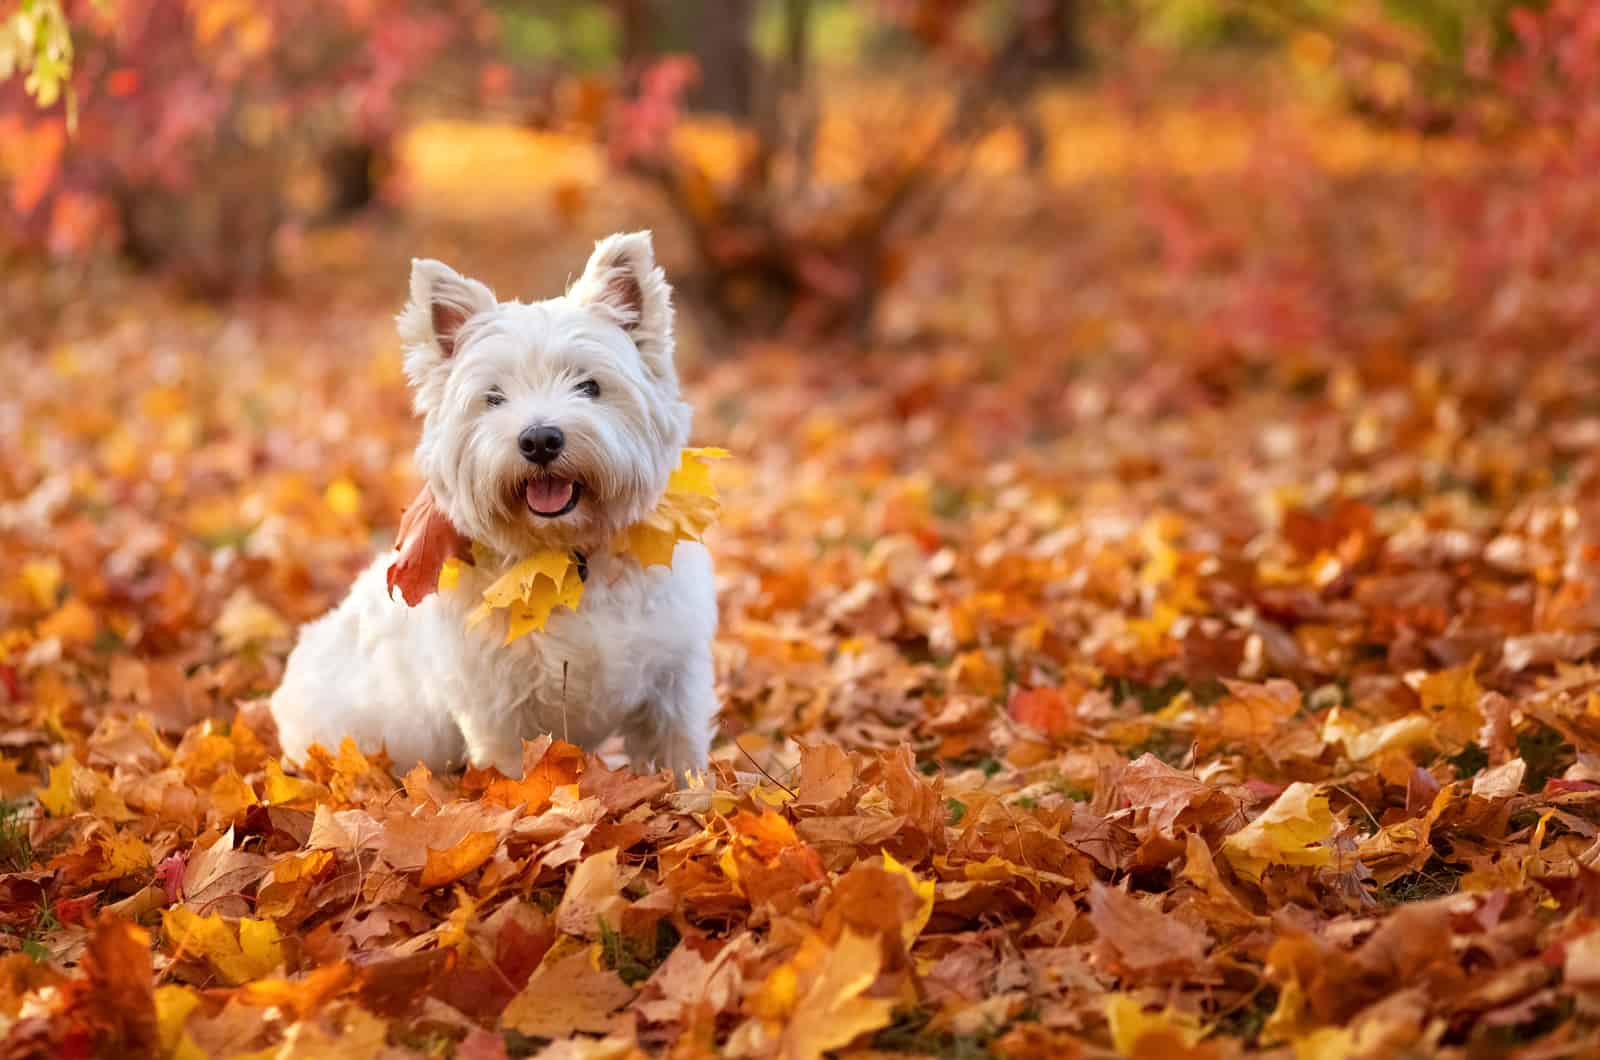 white terrier Dog enjoys autumn leaves